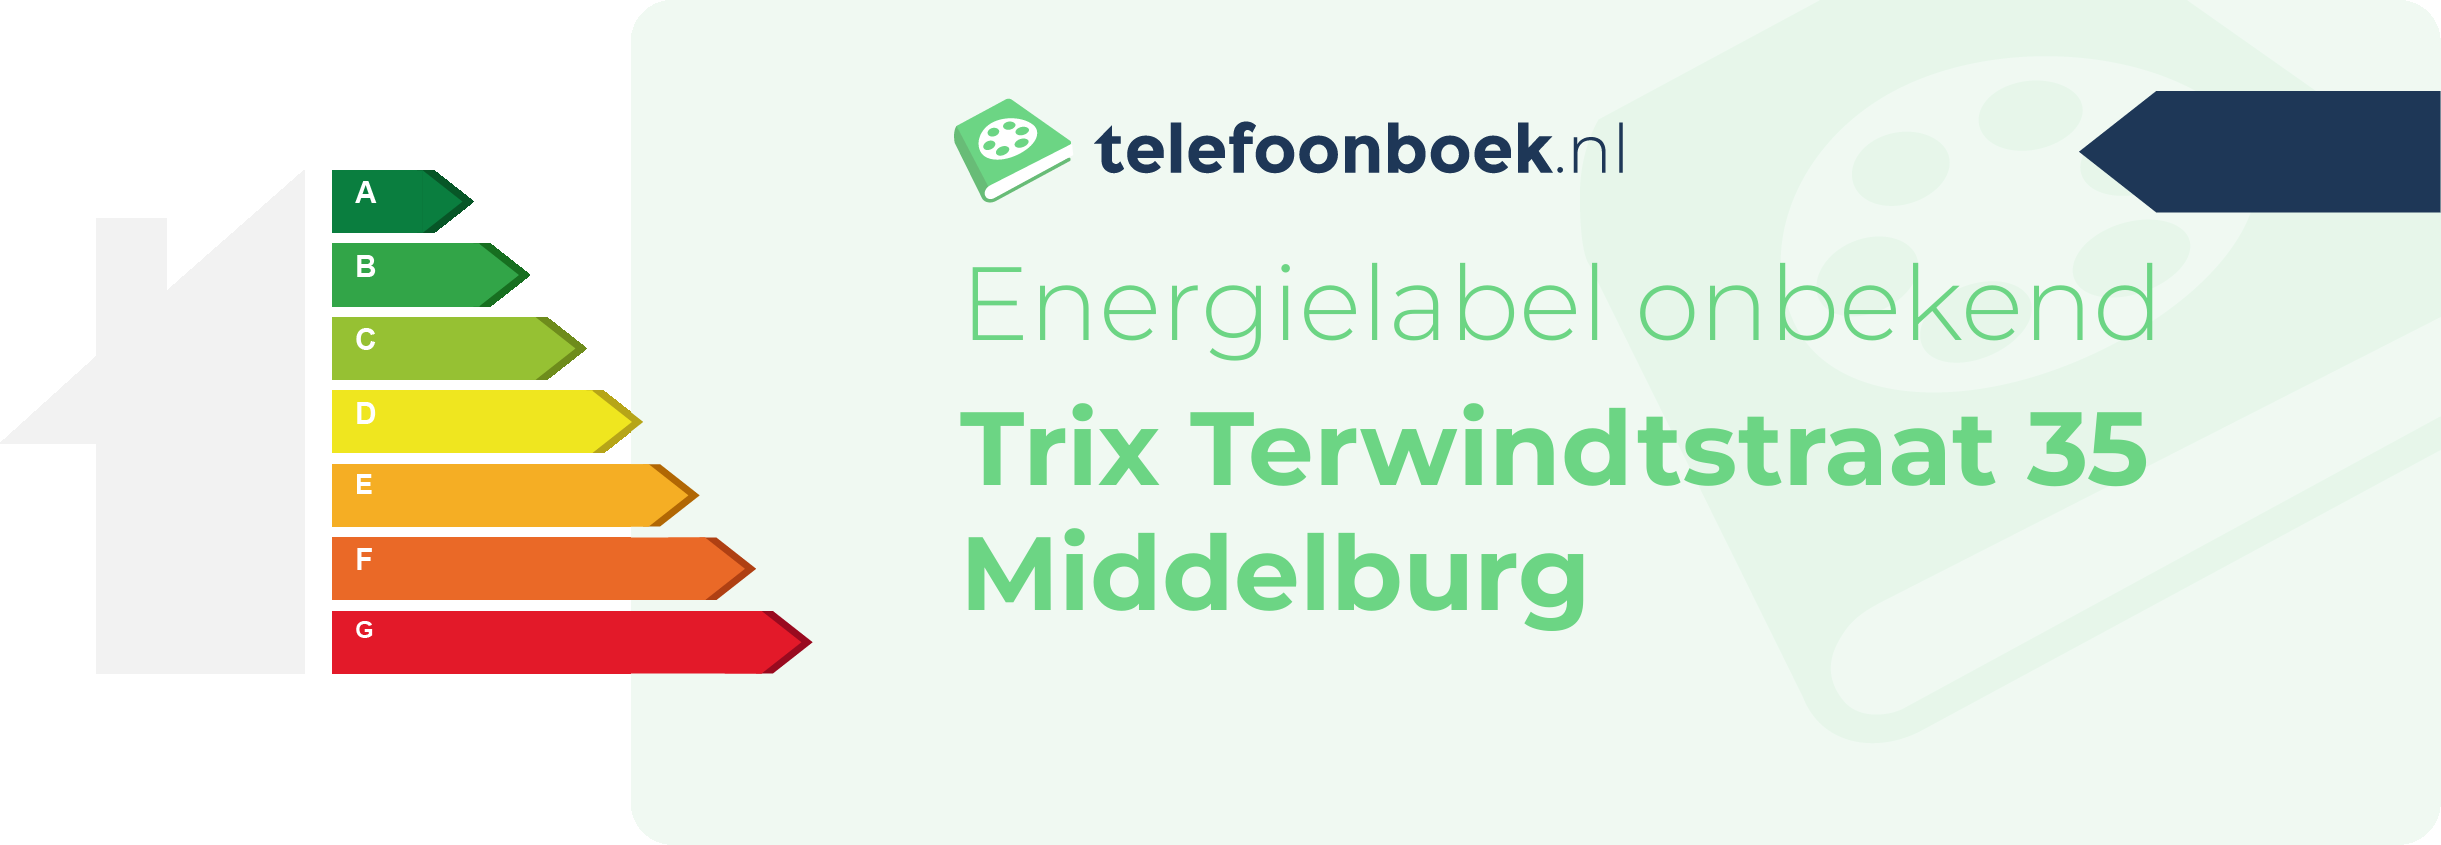 Energielabel Trix Terwindtstraat 35 Middelburg